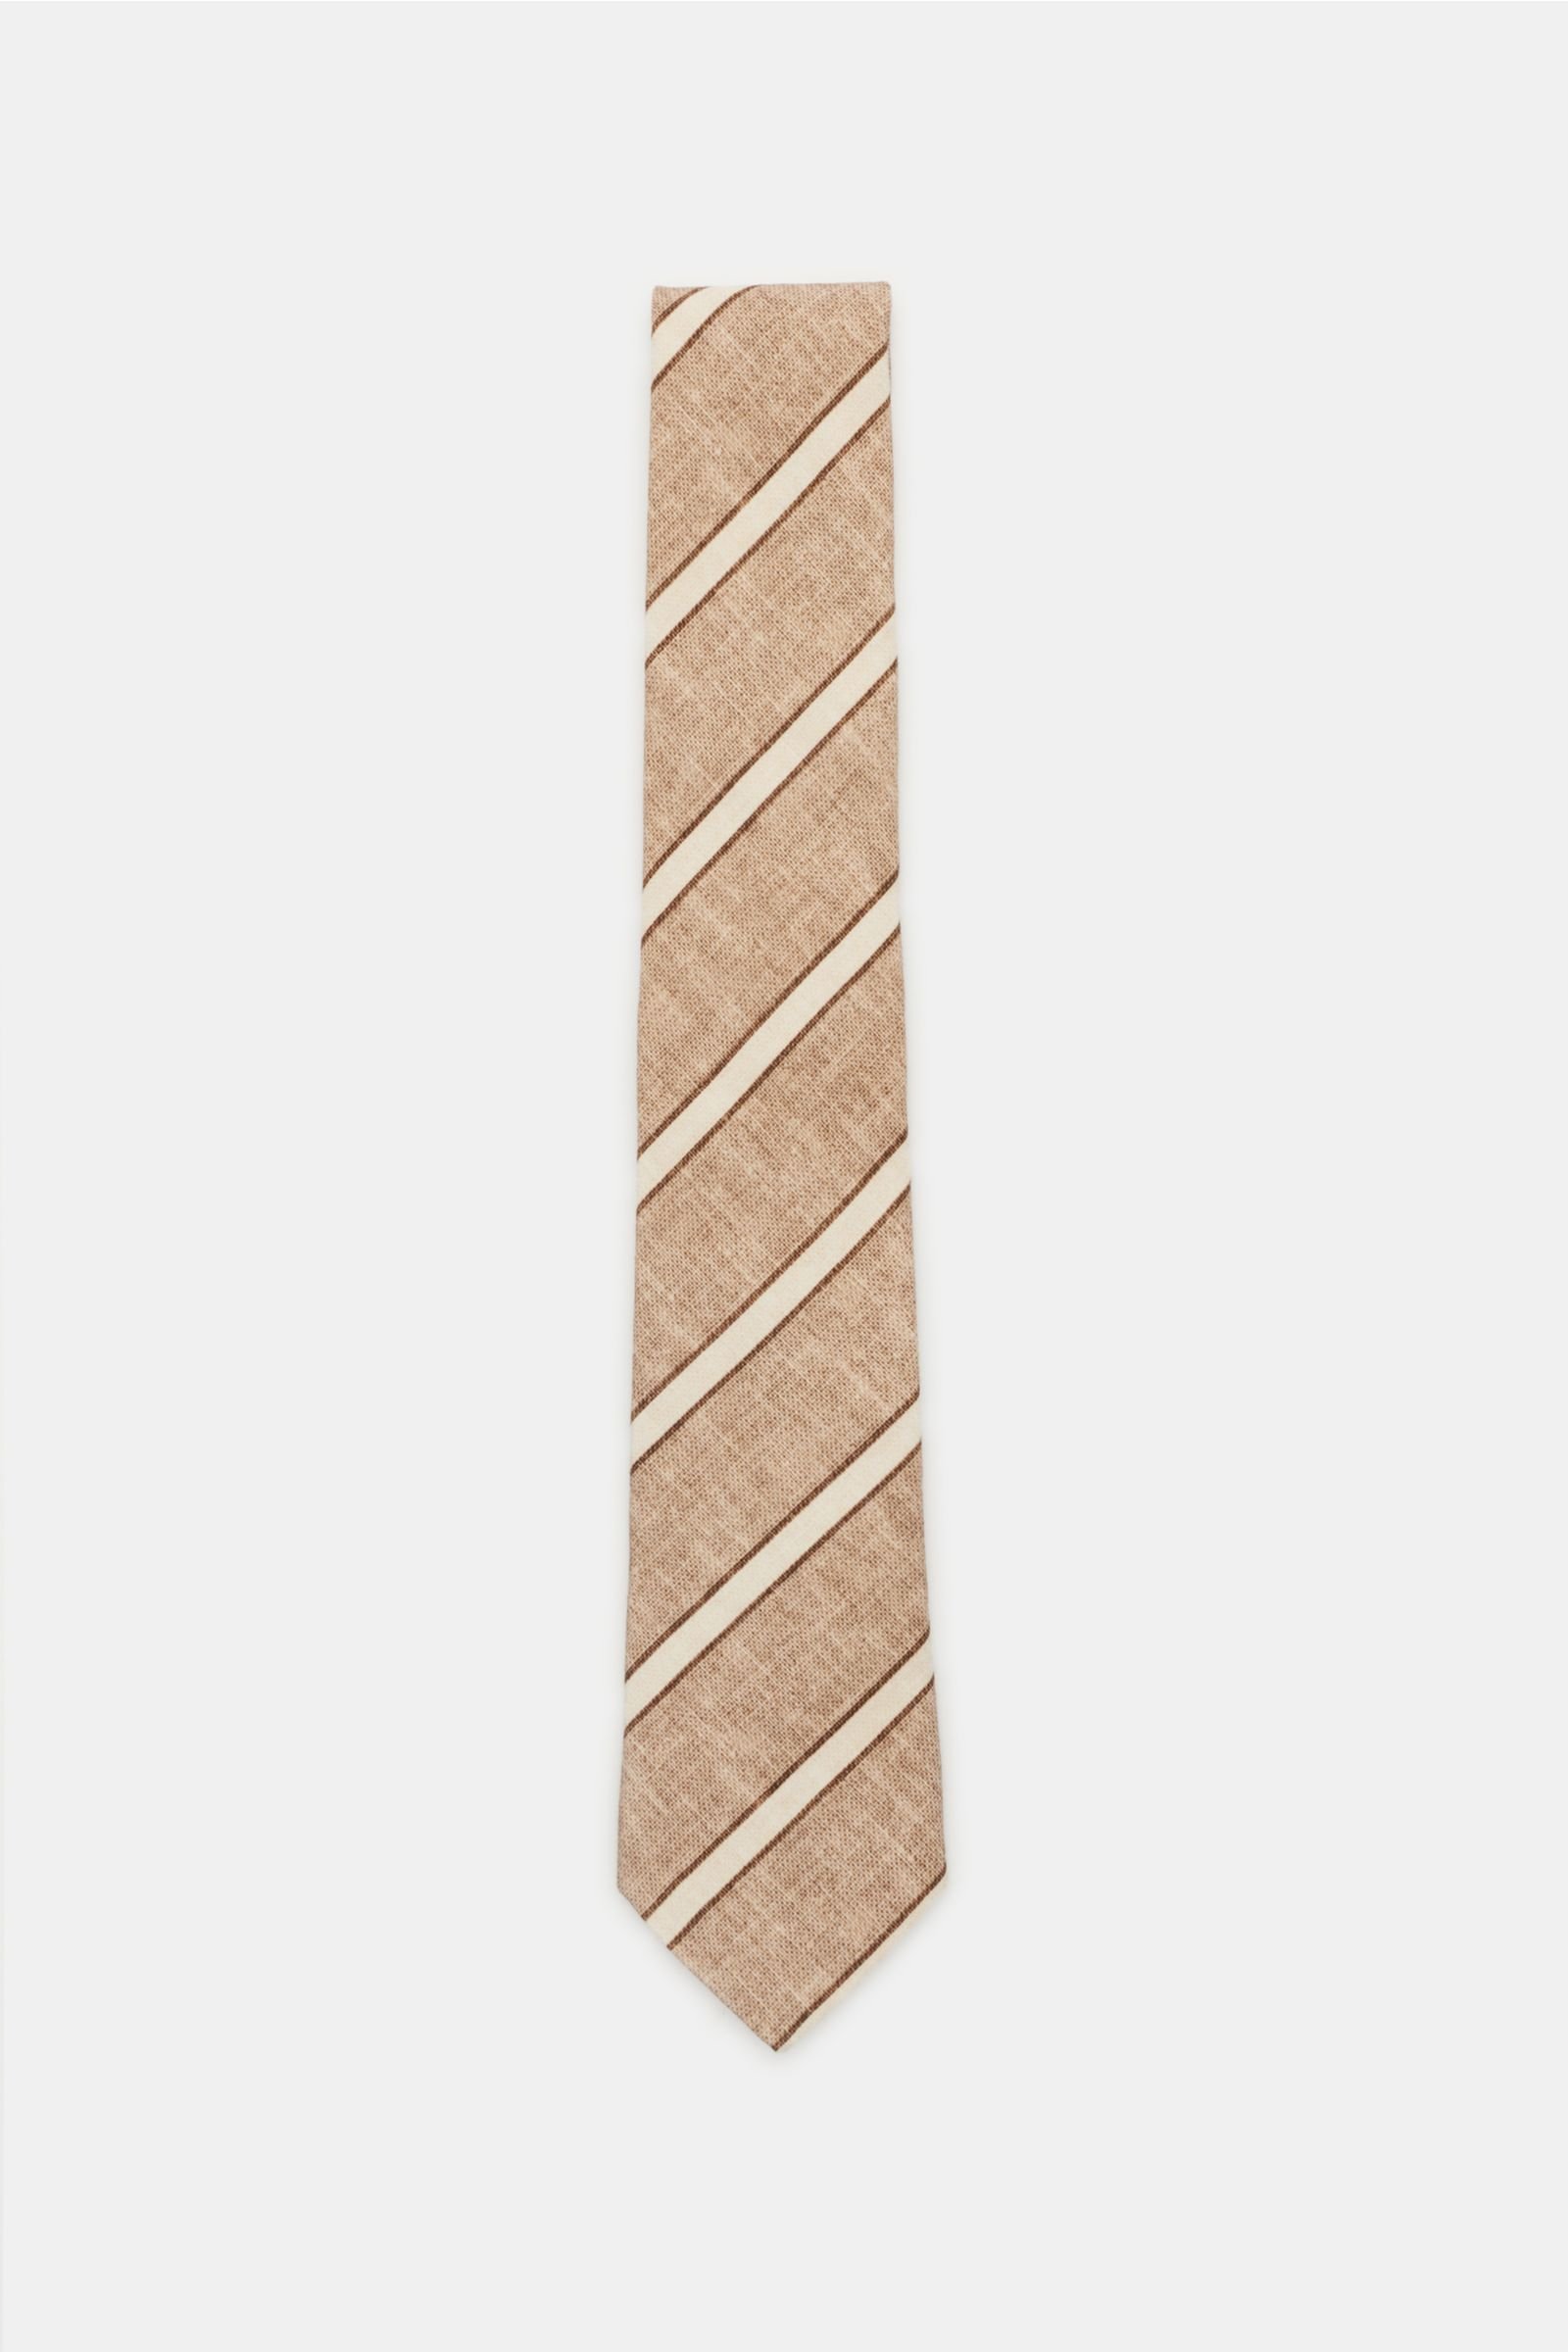 Krawatte braun/beige gestreift